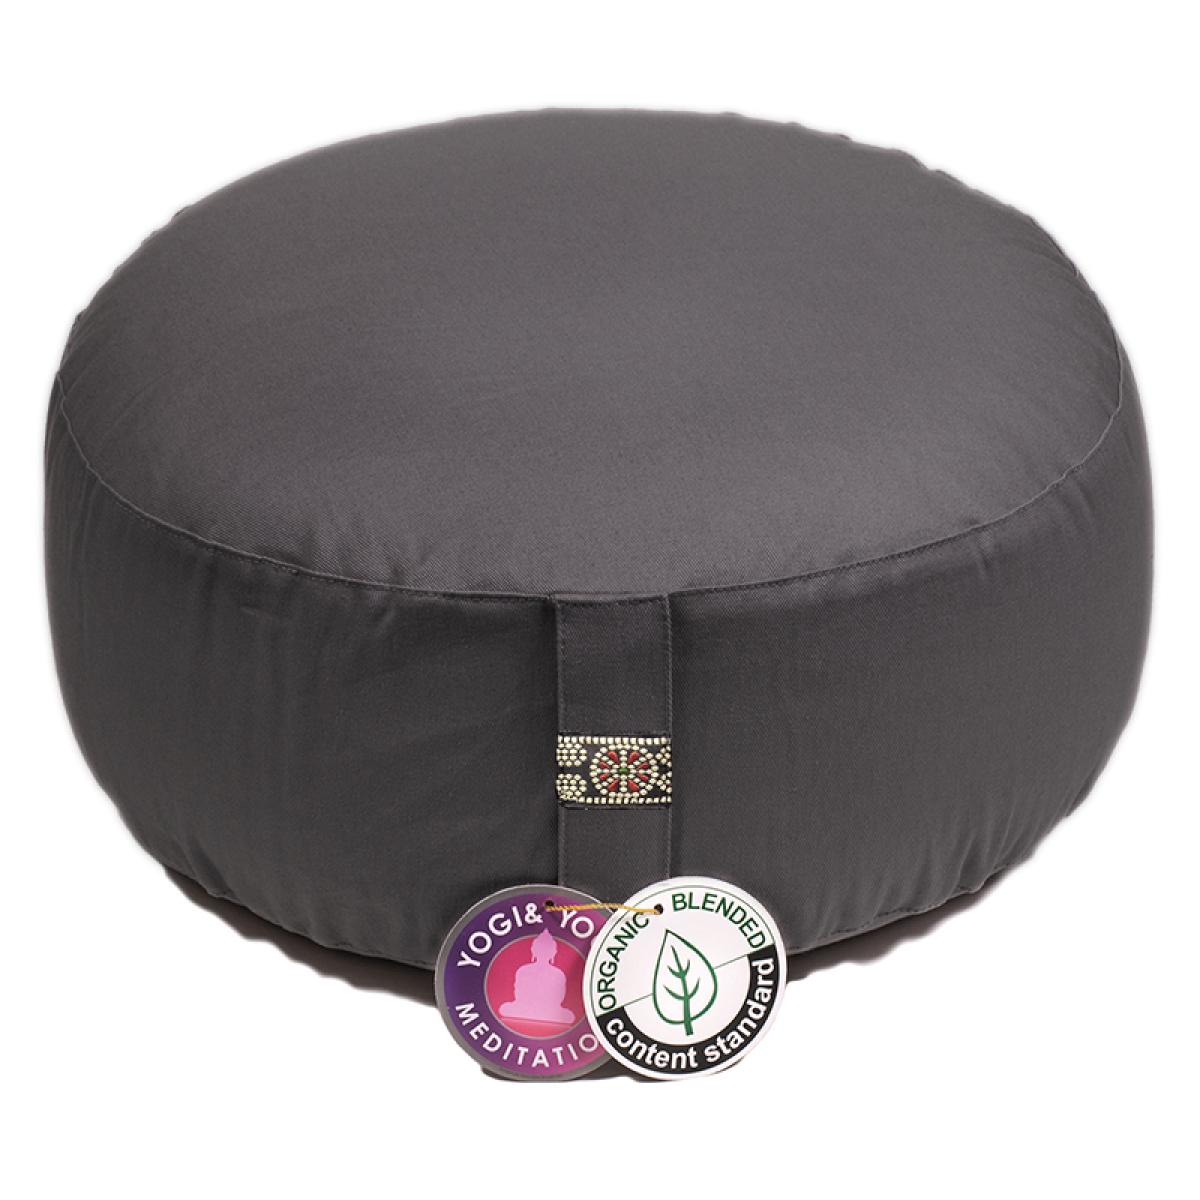 Yogi & Yogini yoga & mediation cushion anthracite ➤ www.bokken-shop.de buy › Yoga cushion ✓ 100% organic cotton. Your meditation specialist shop!